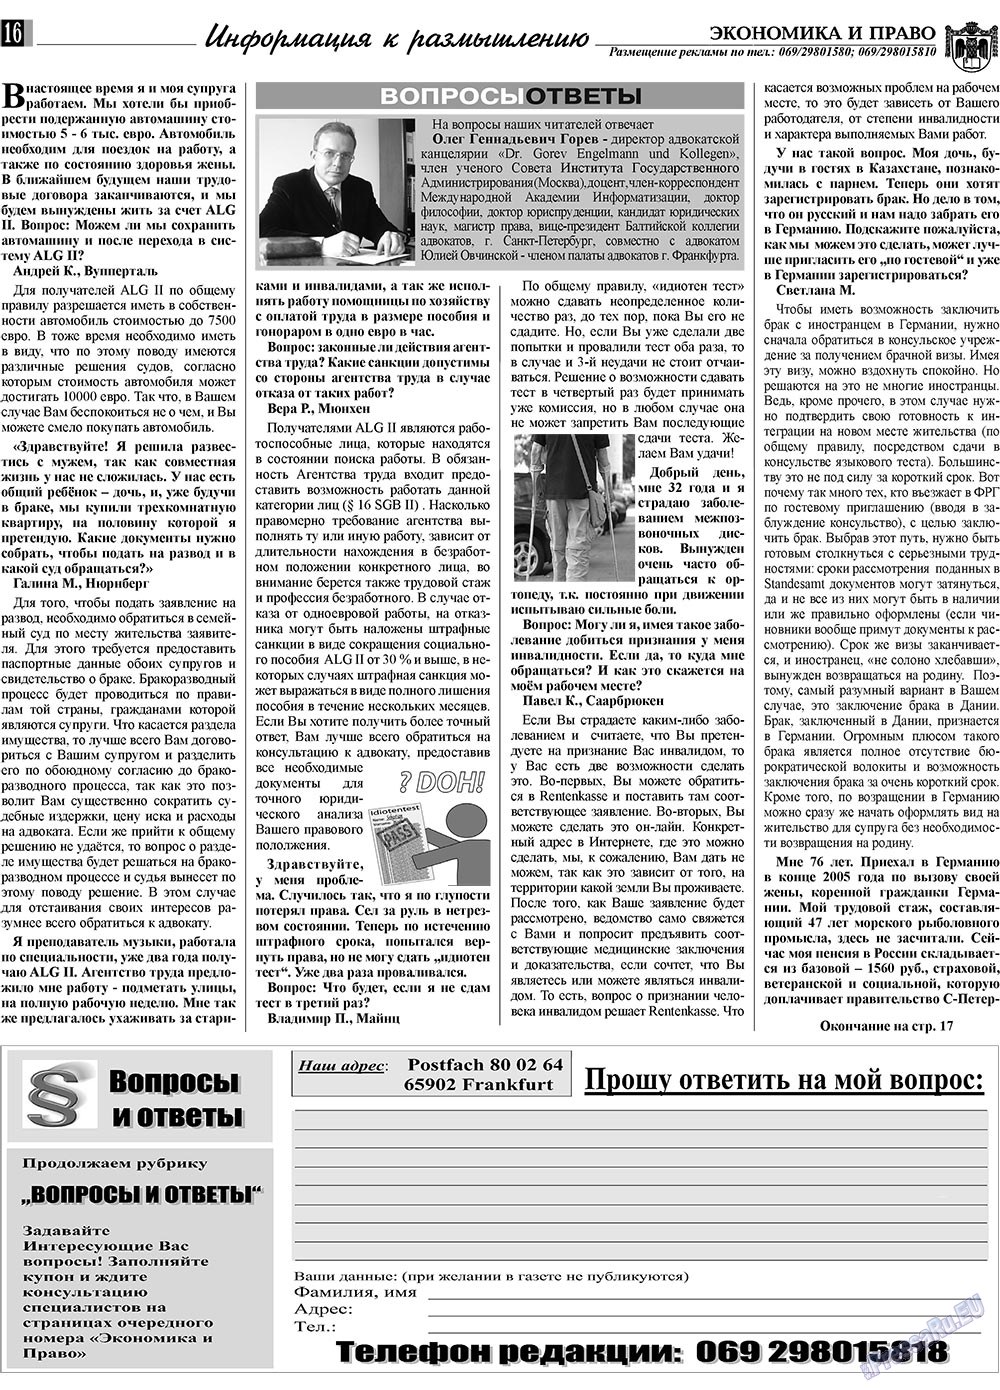 Экономика и право, газета. 2009 №9 стр.16